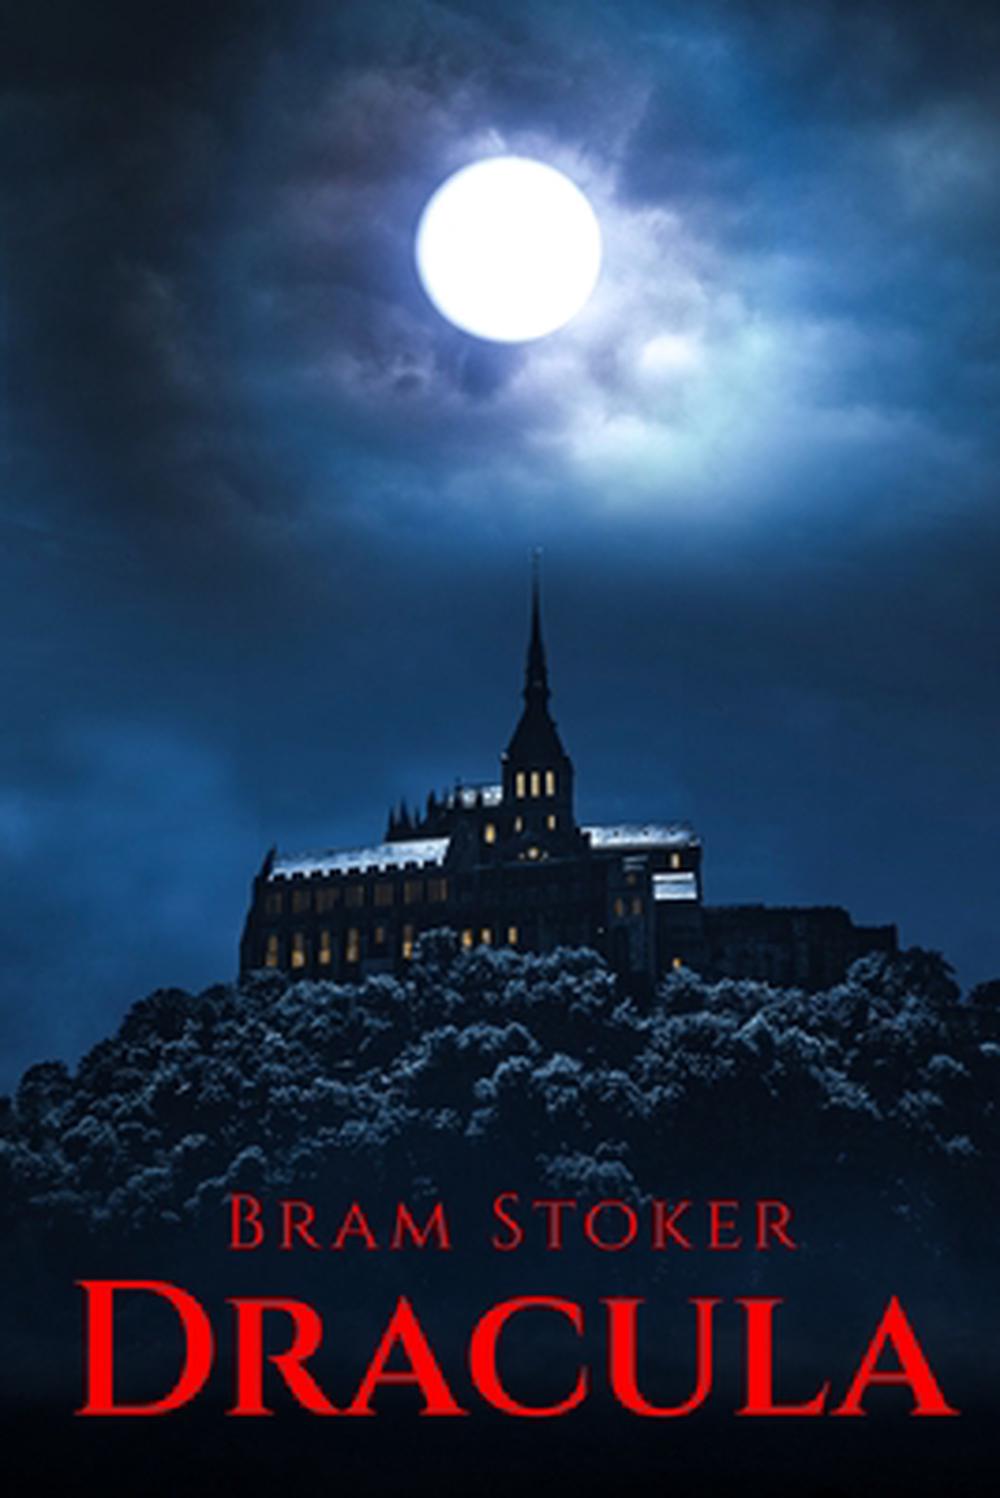 book review dracula bram stoker